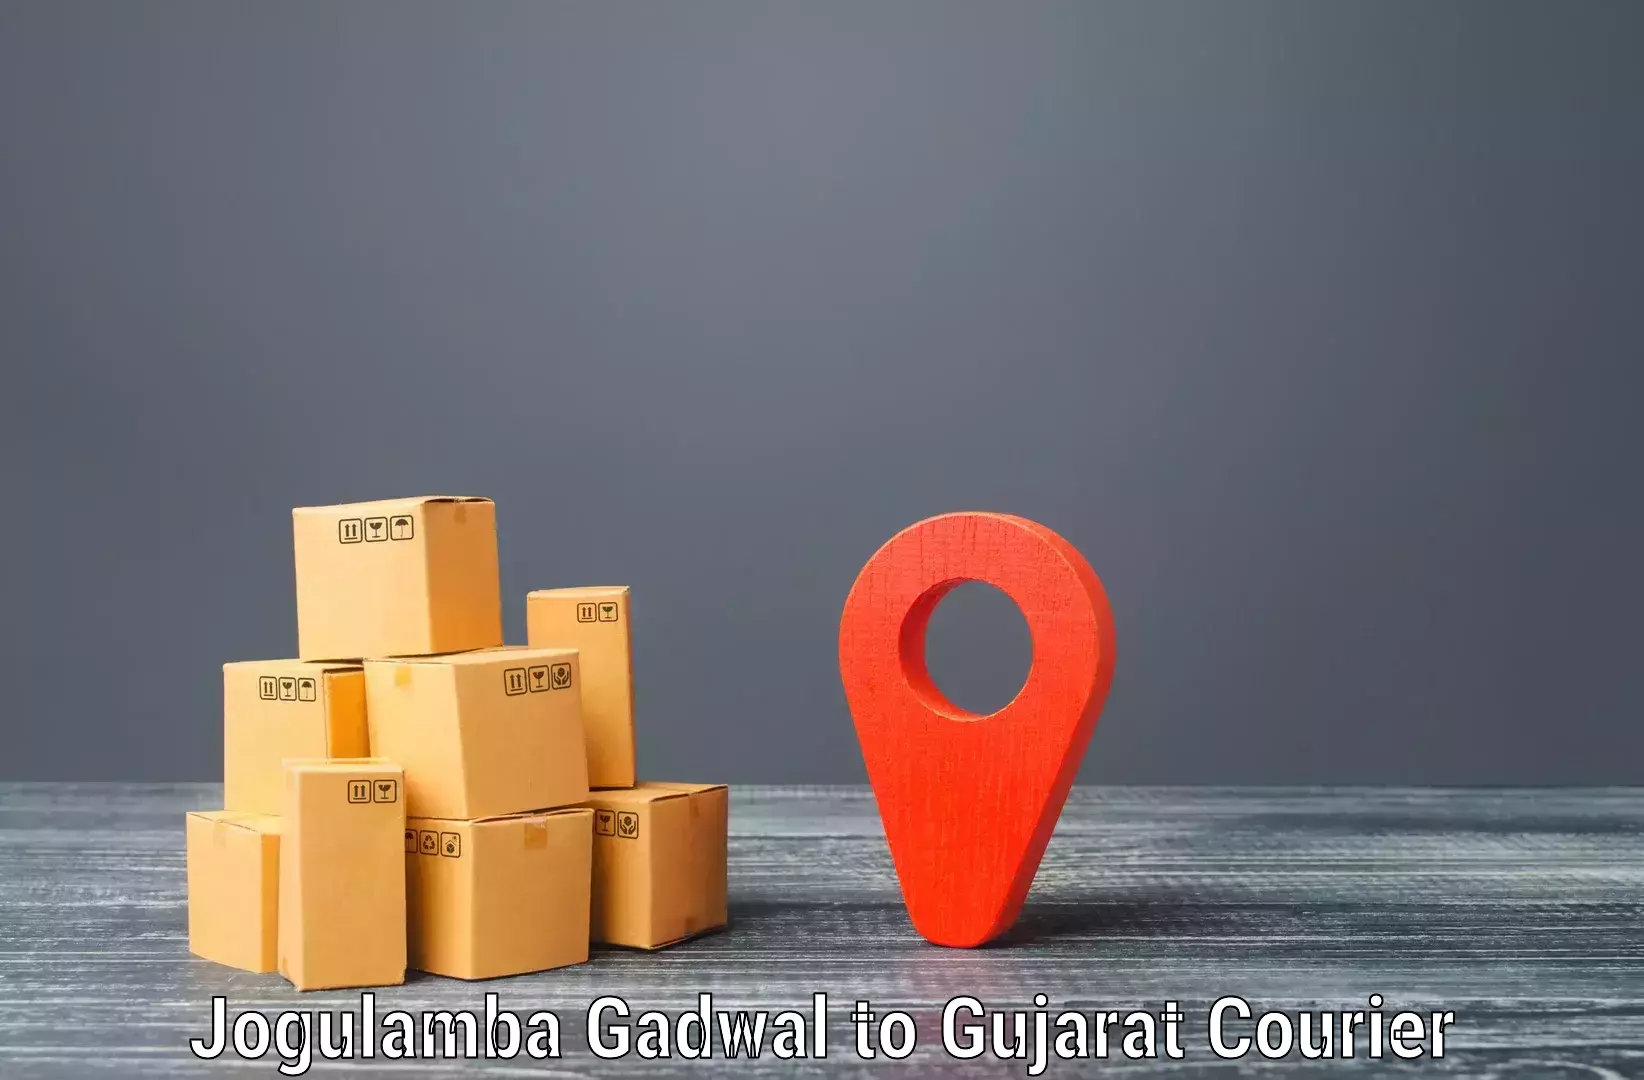 Express delivery capabilities Jogulamba Gadwal to Nadiad